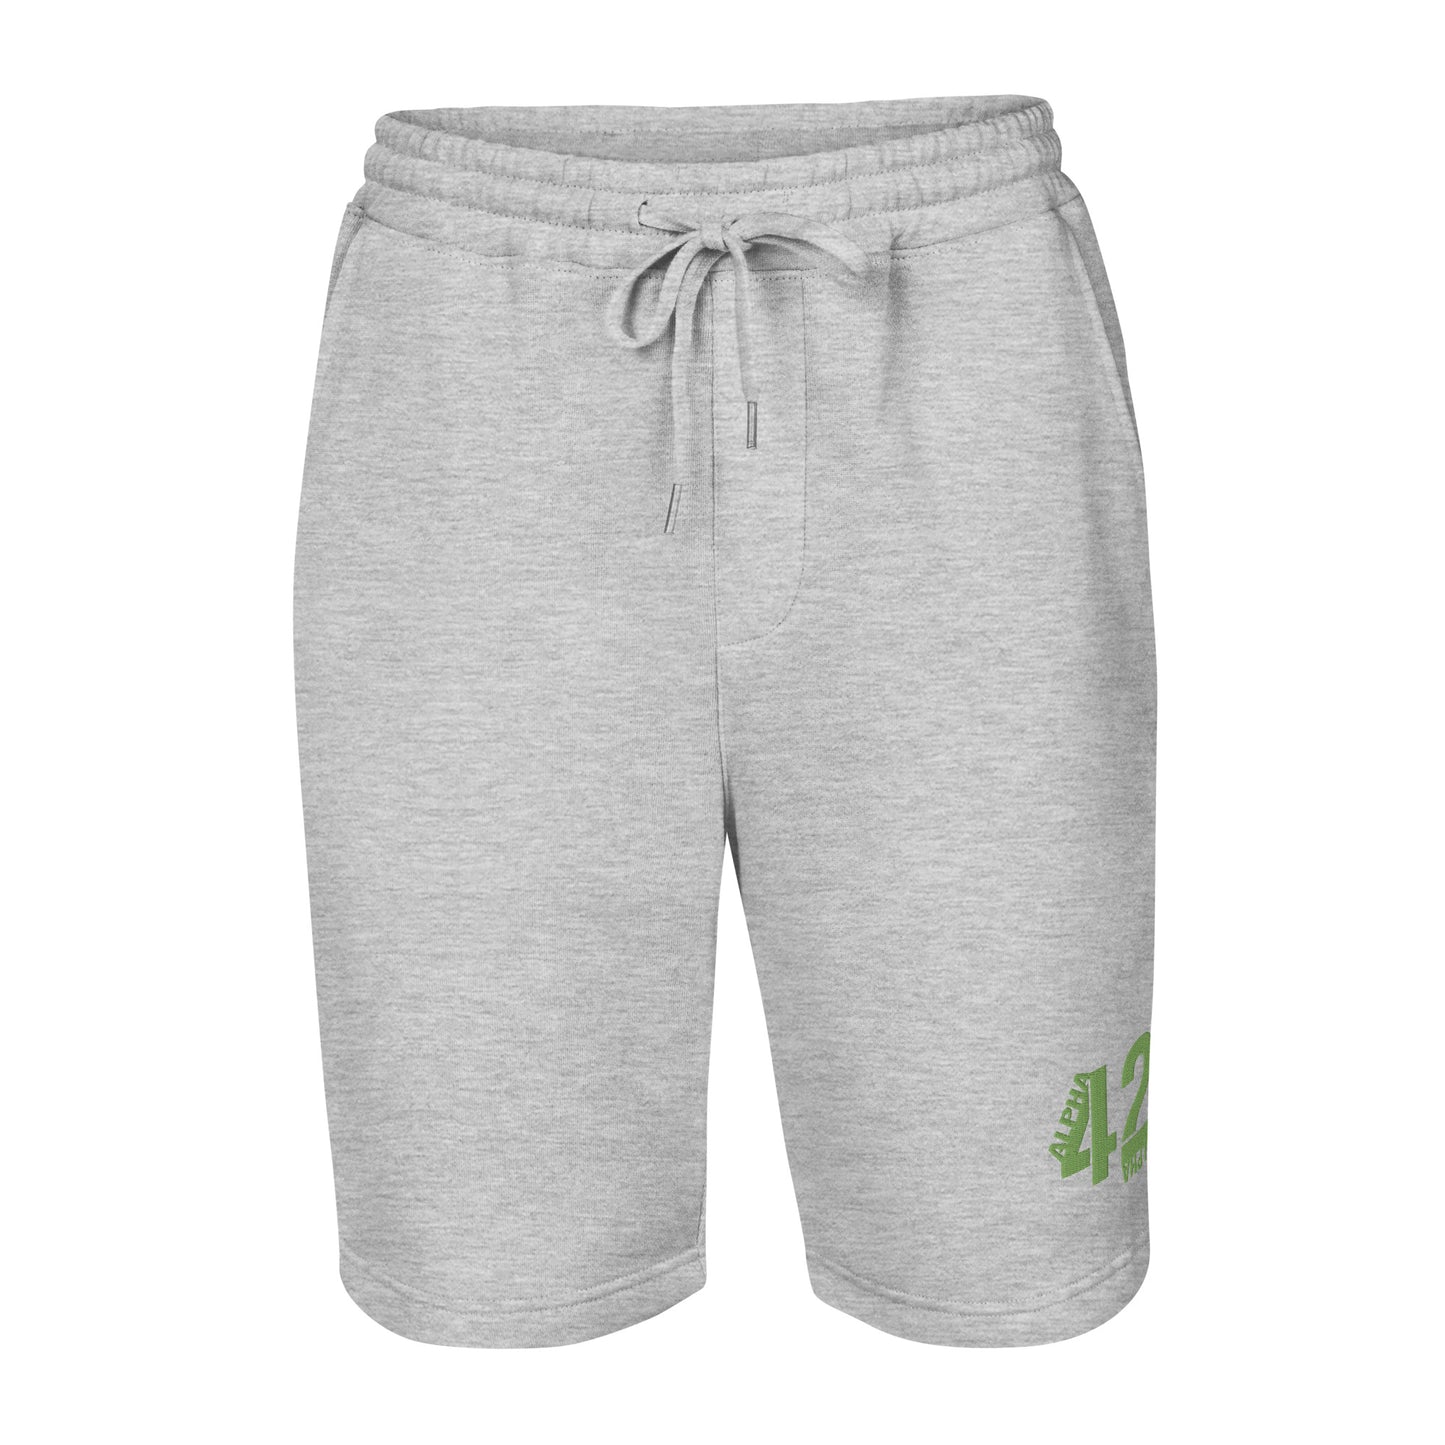 A42A - Men's fleece shorts